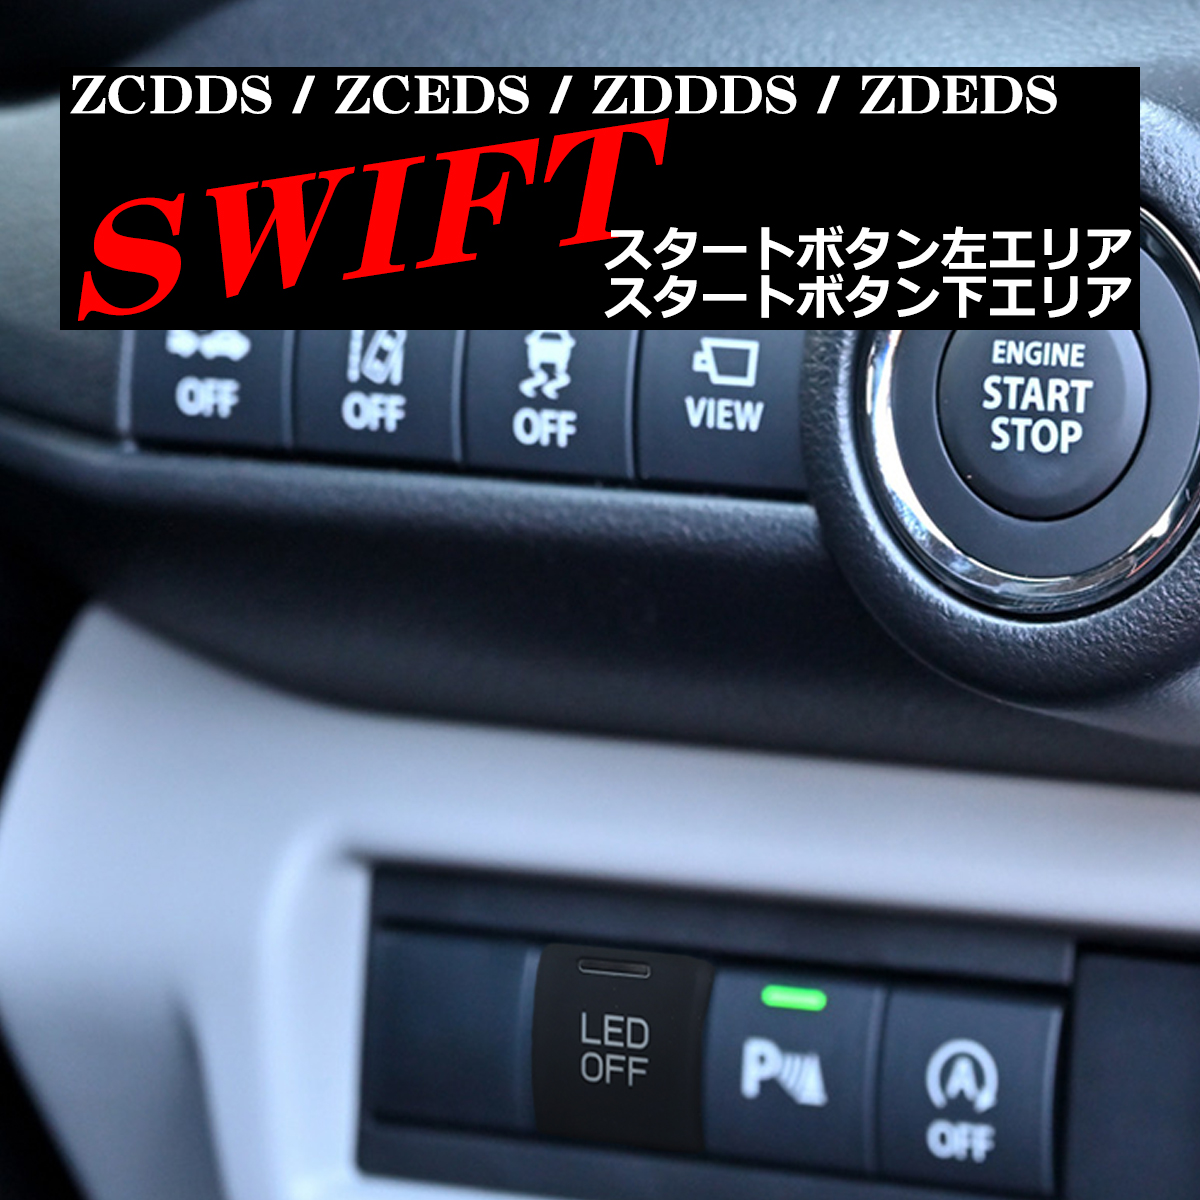 純正風 DS型 スイフト スイッチ ZCDDS ZCEDS ZDDDS ZDEDS 増設用 適合詳細は画像に掲載 IZ336｜tech｜08